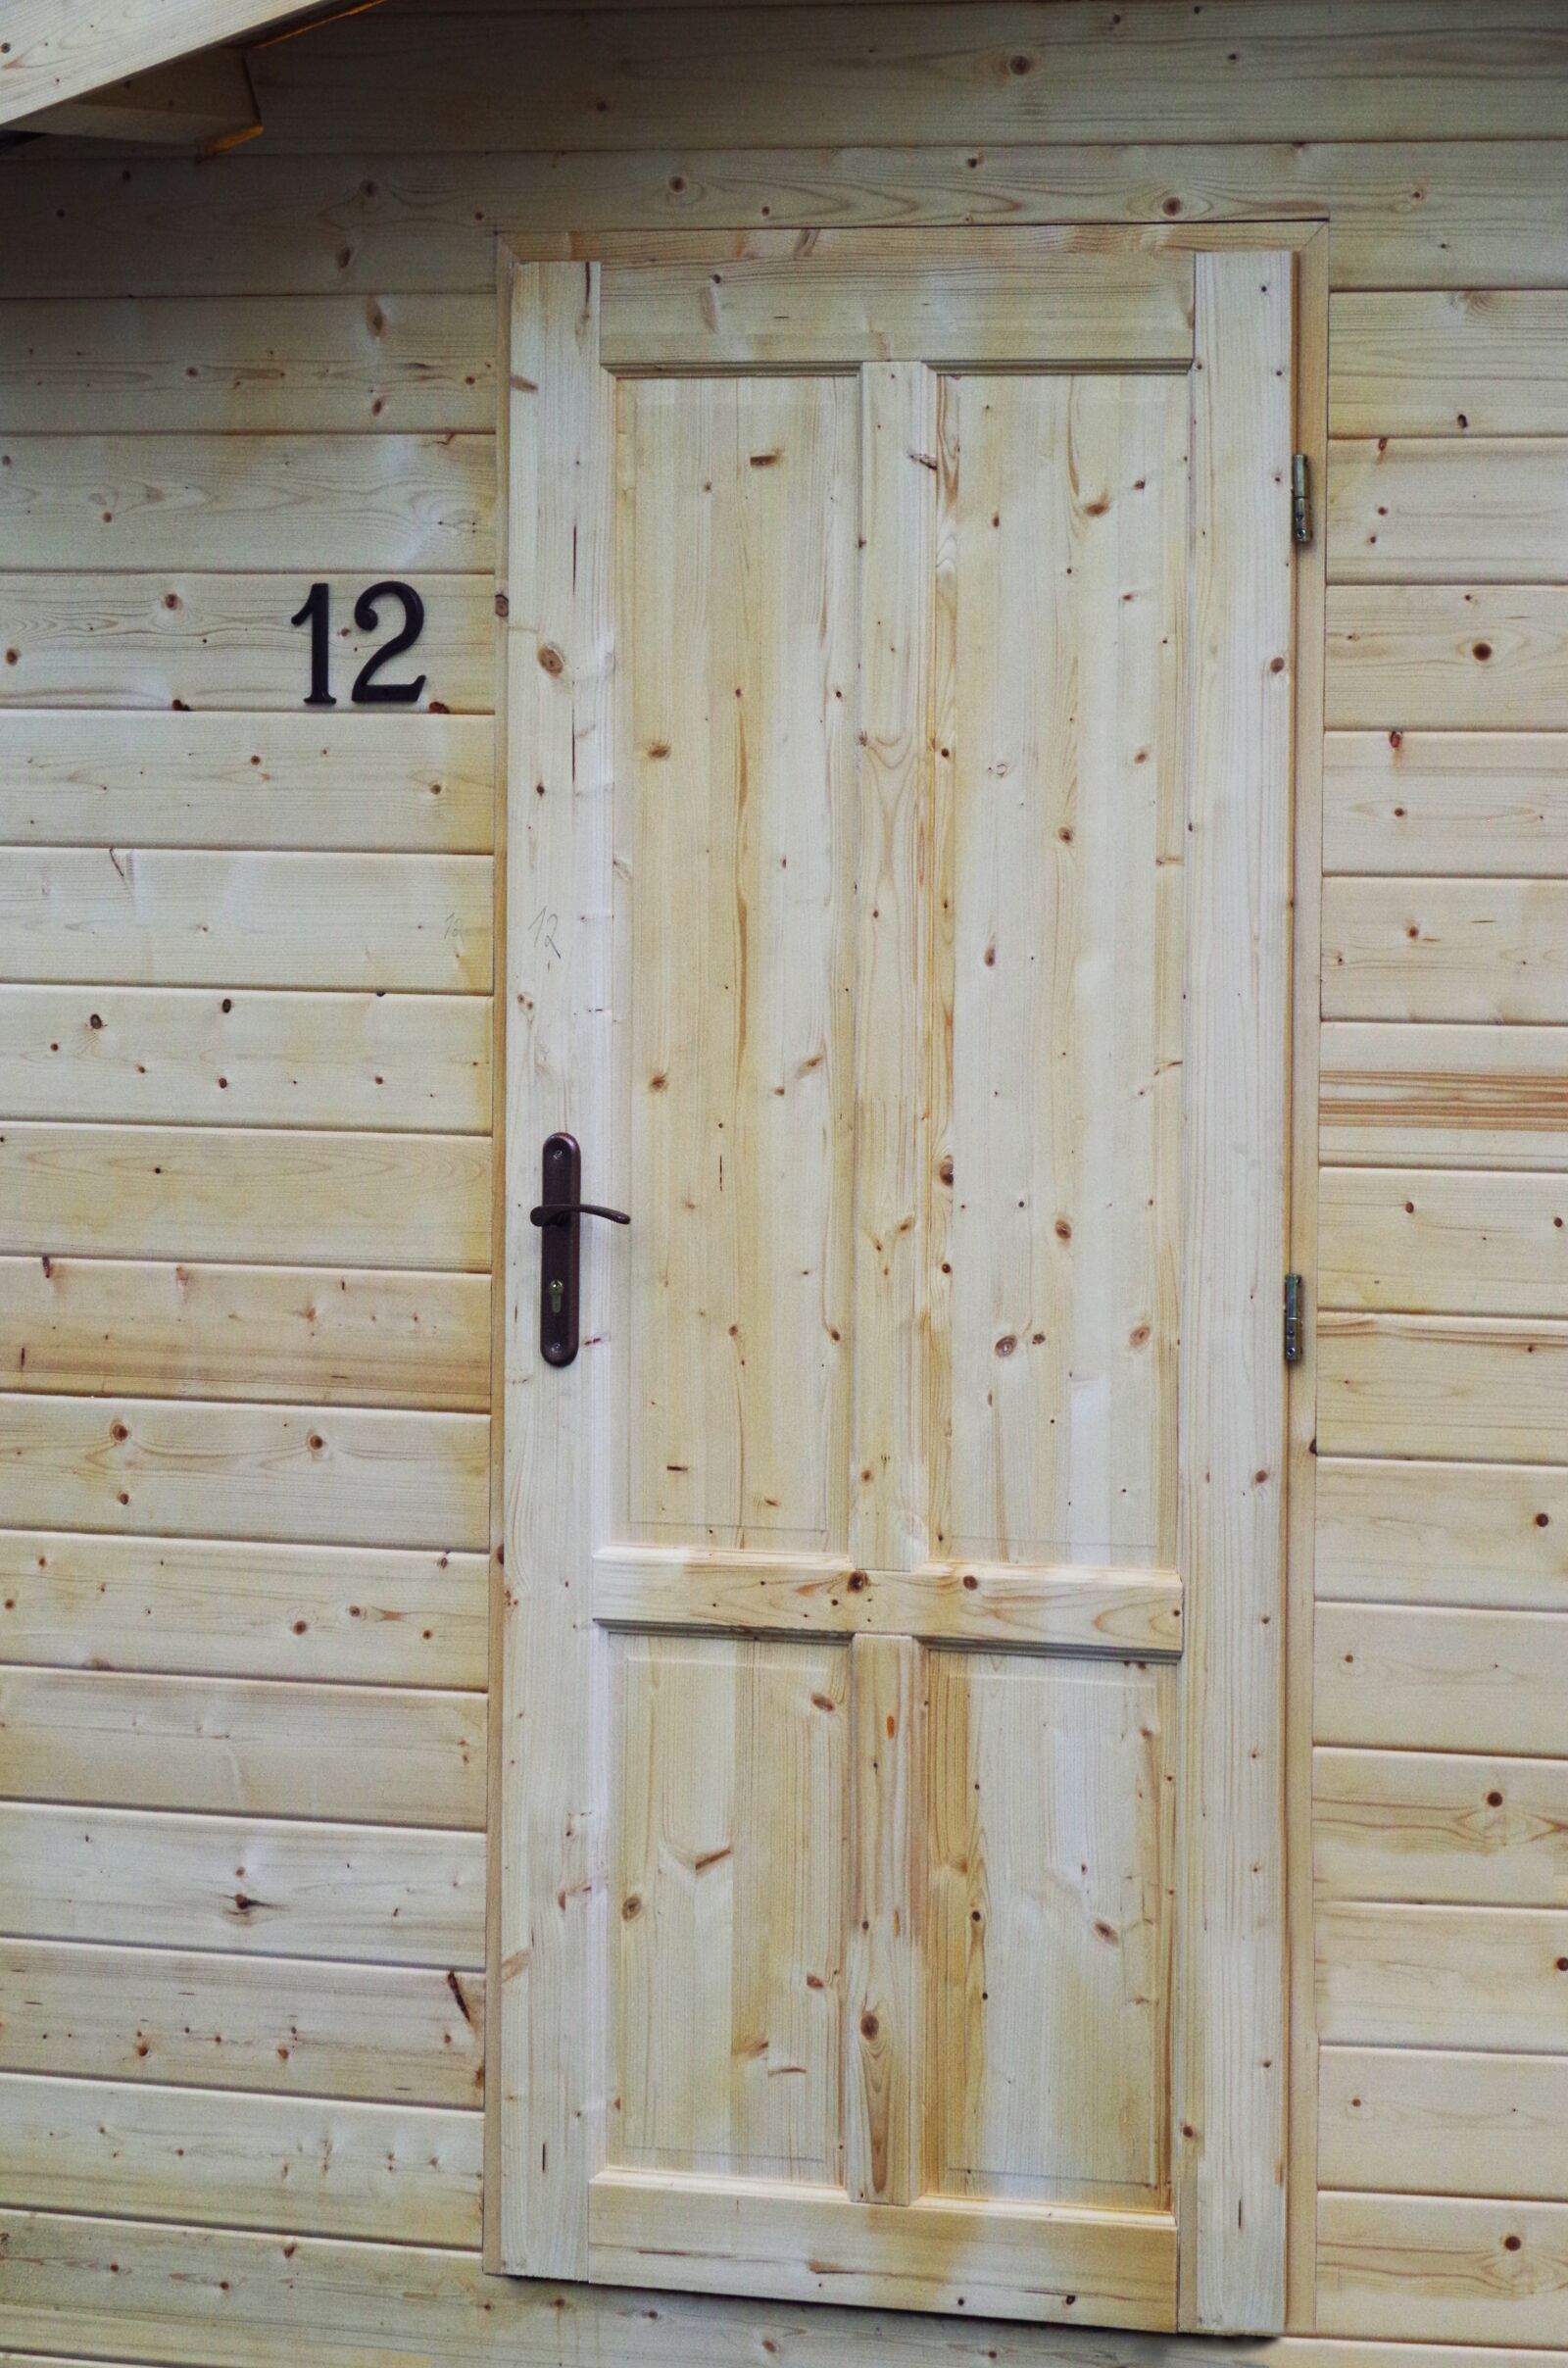 Pentax K-500 sample photo. Door, wood, building photography